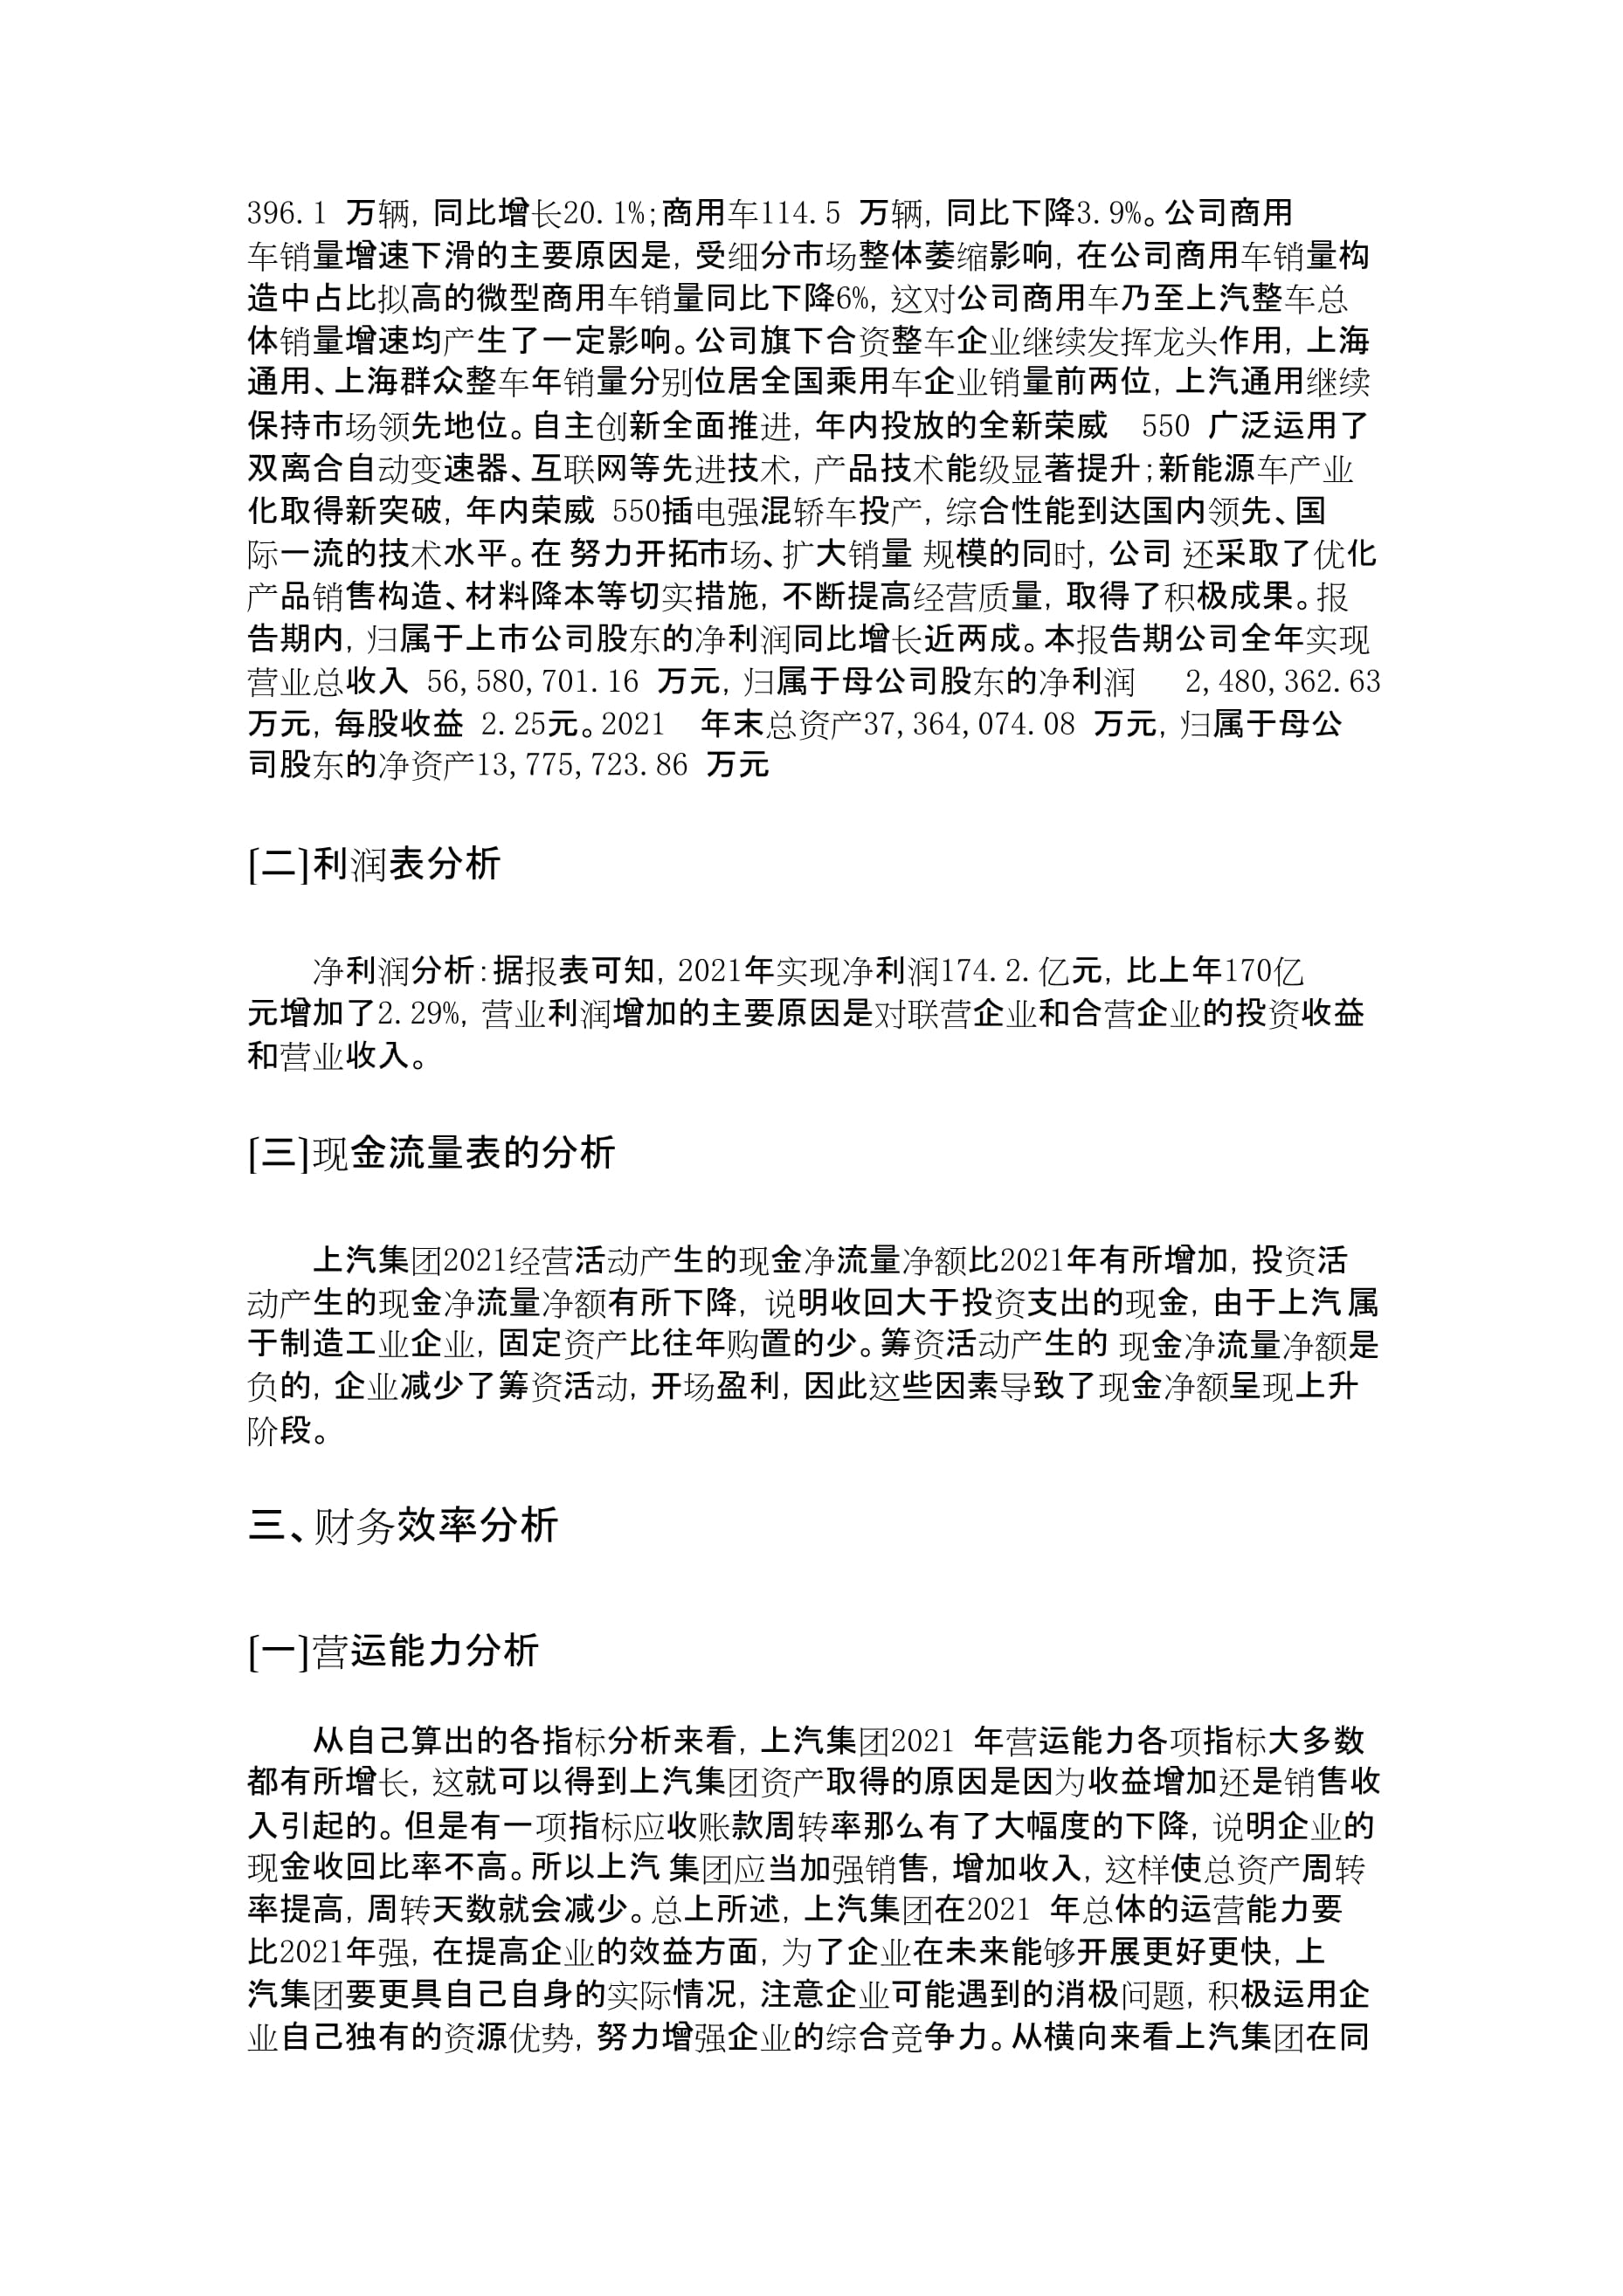 上海汽车集团公司2013年财务分析报告